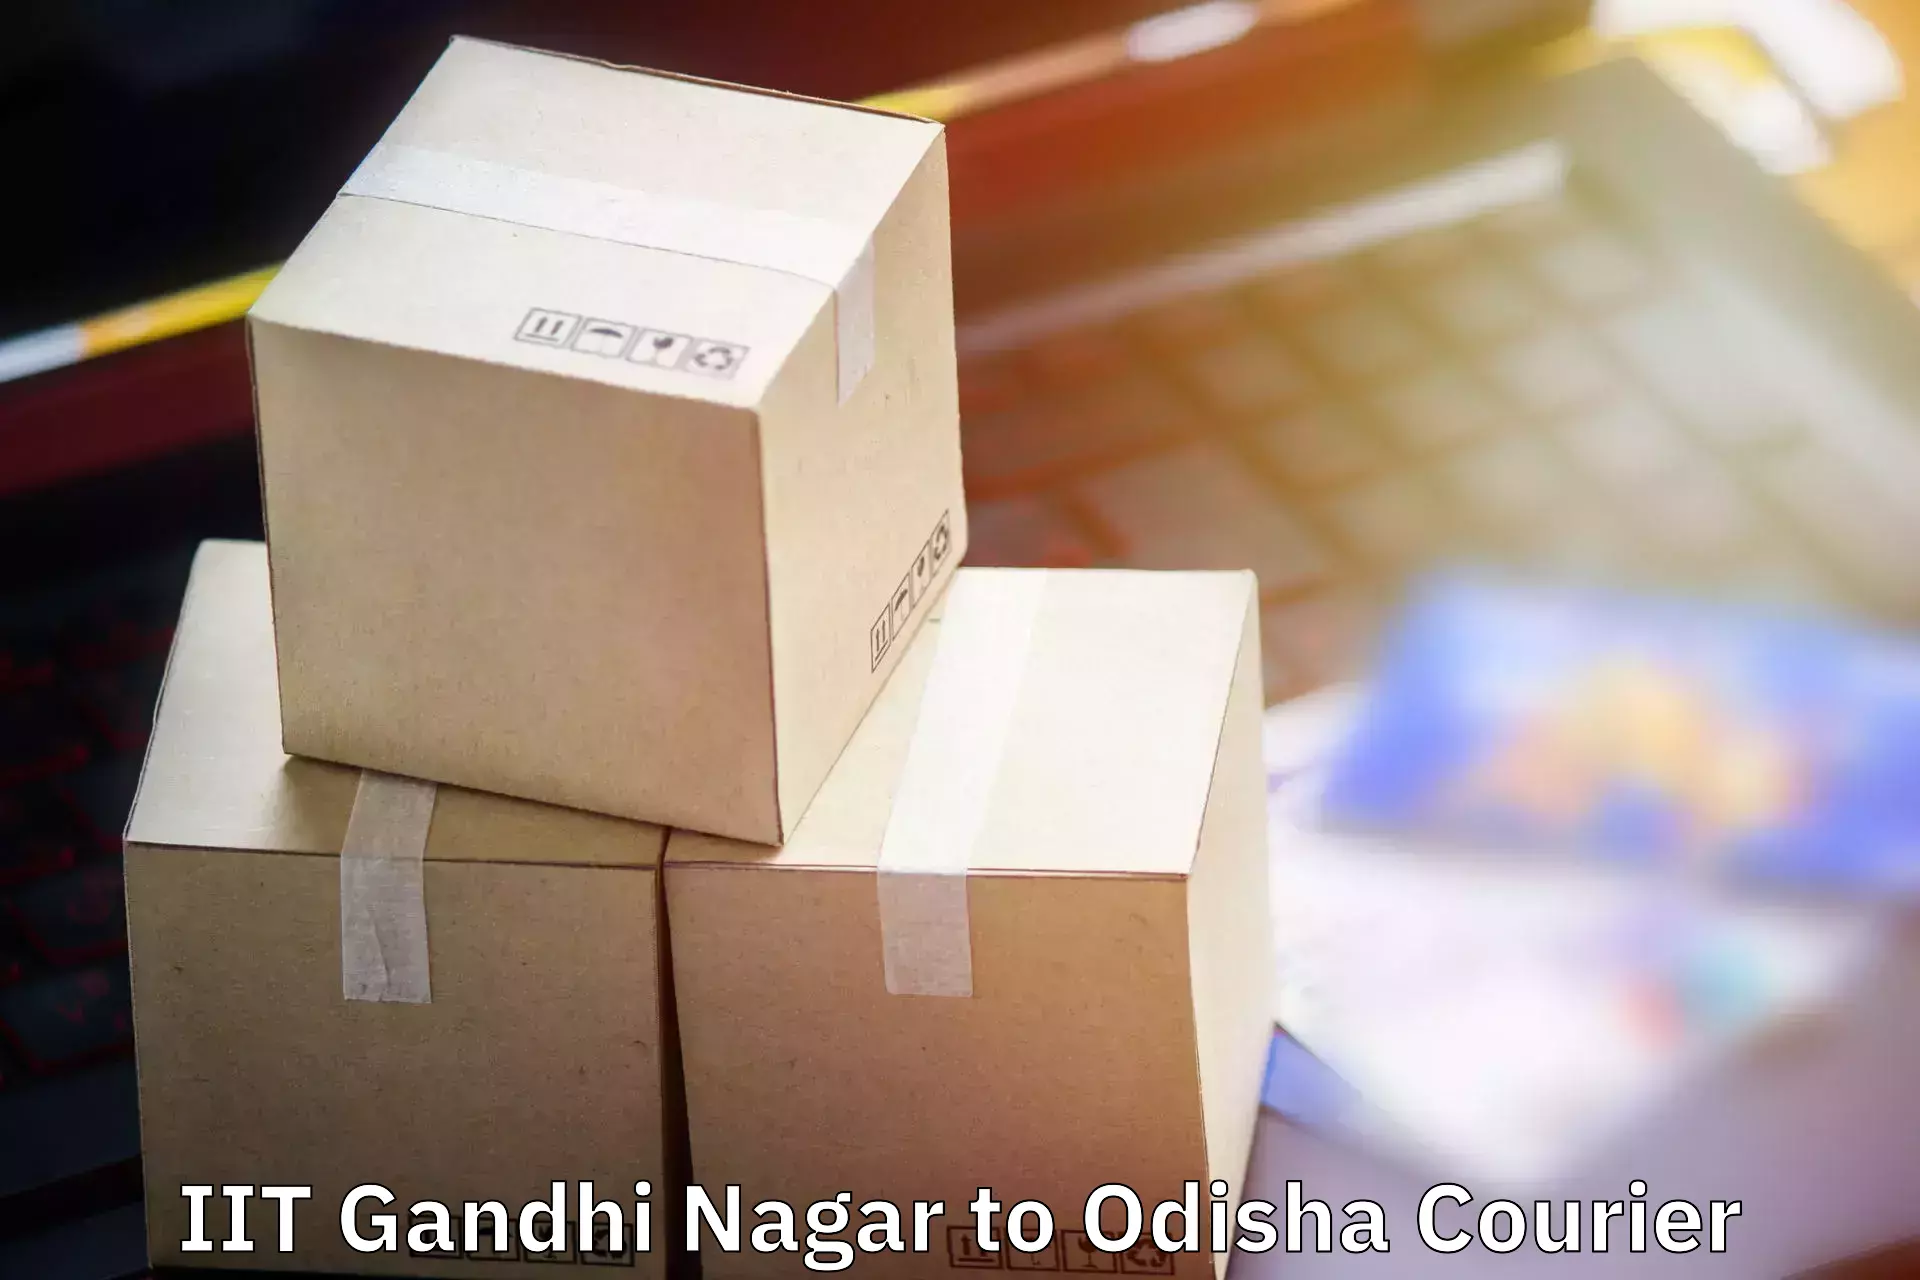 Baggage shipping service in IIT Gandhi Nagar to Agarpada